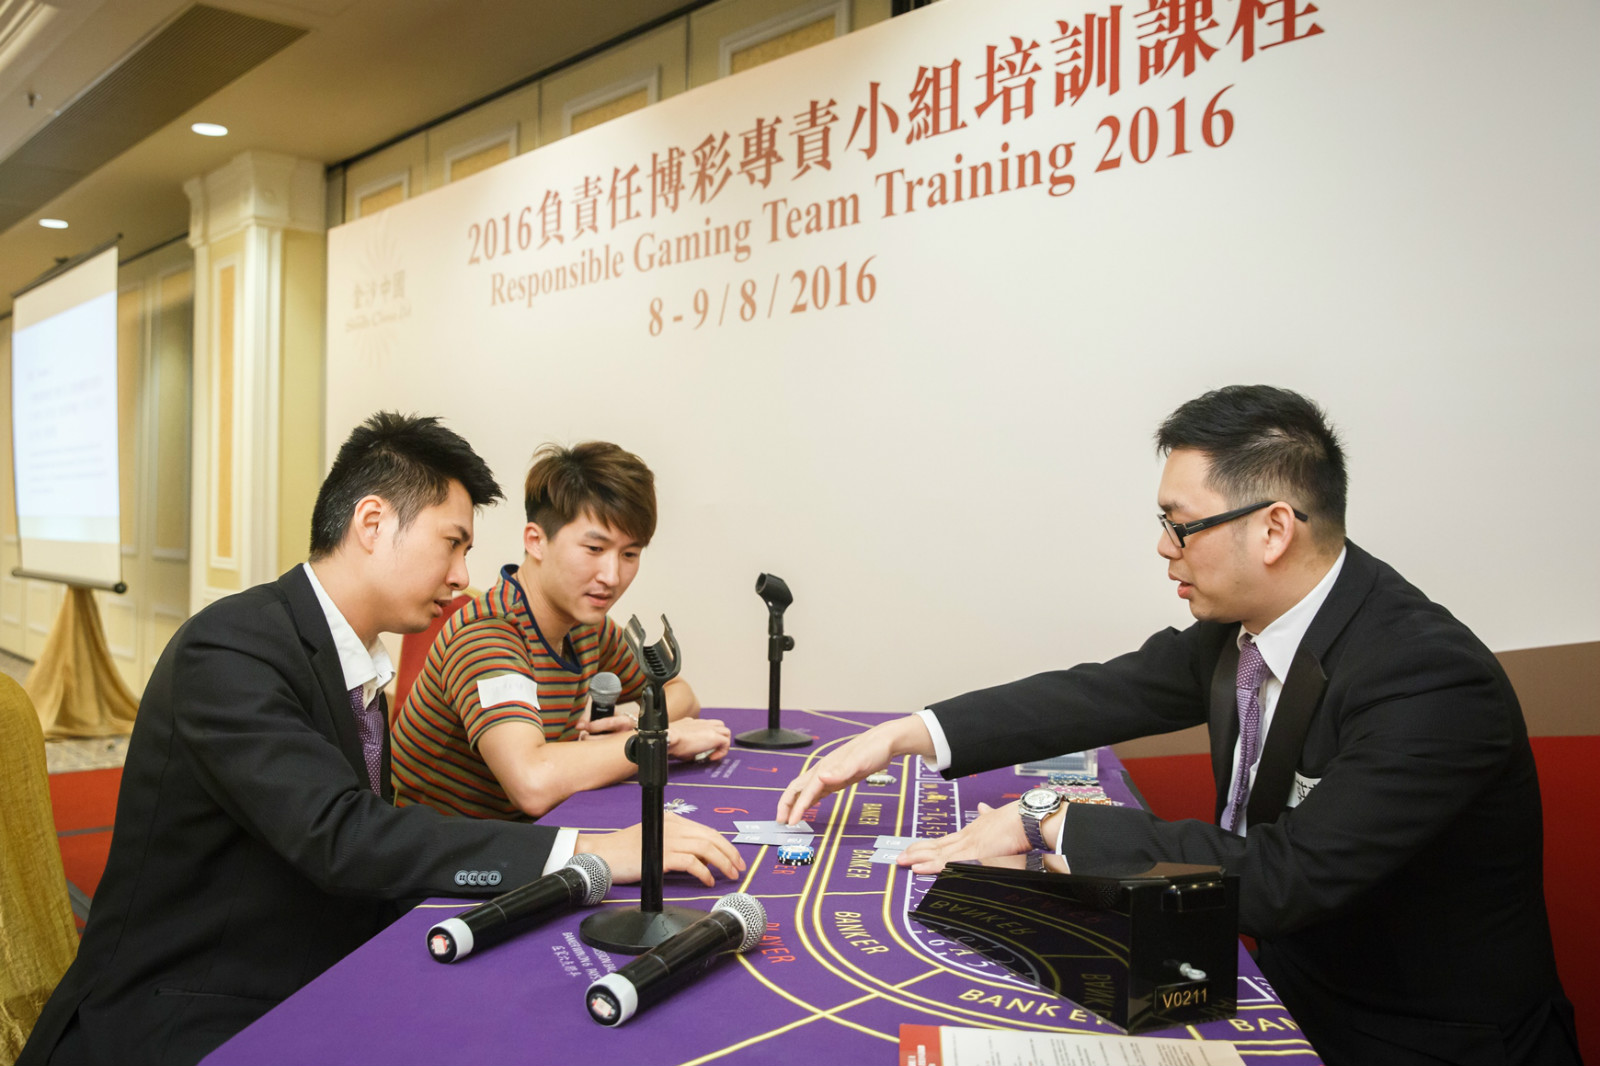 金沙中国连续第四年为员工举办负责任博彩培训